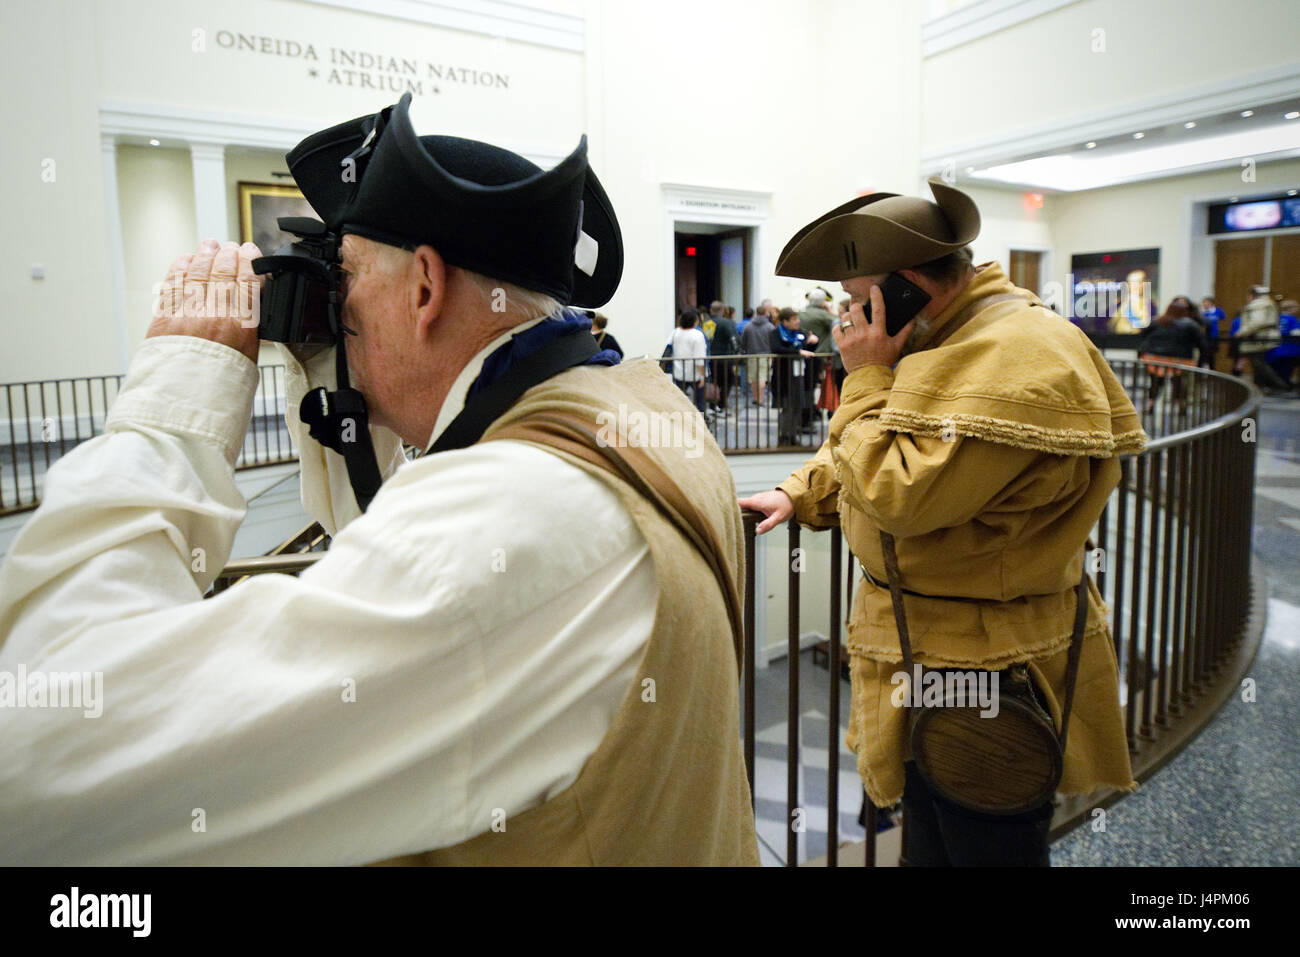 Visiteurs en tenue de guerre révolutionnaire admirer l'exposition lors d'une visite du musée de la Révolution américaine, à Philadelphie, PA. Banque D'Images